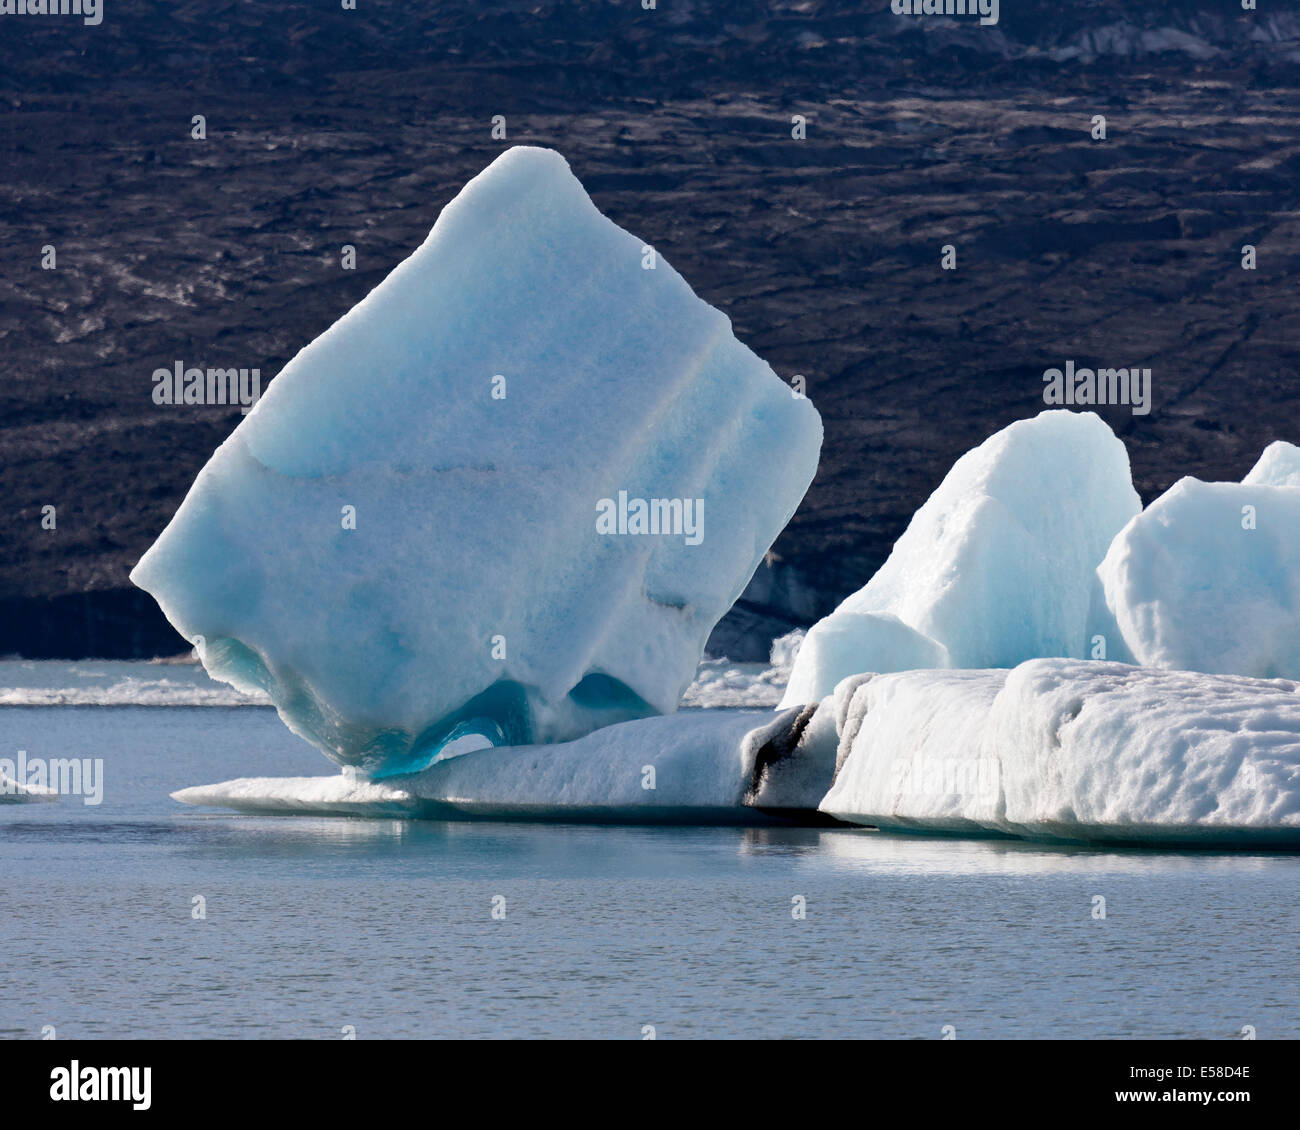 Les icebergs, Jokulsarlon Glacial Lagoon, Breidarmerkurjokull Glacier, calotte de glace, l'Islande Vatnajokull Ash vu dans la glace en raison de volca Banque D'Images